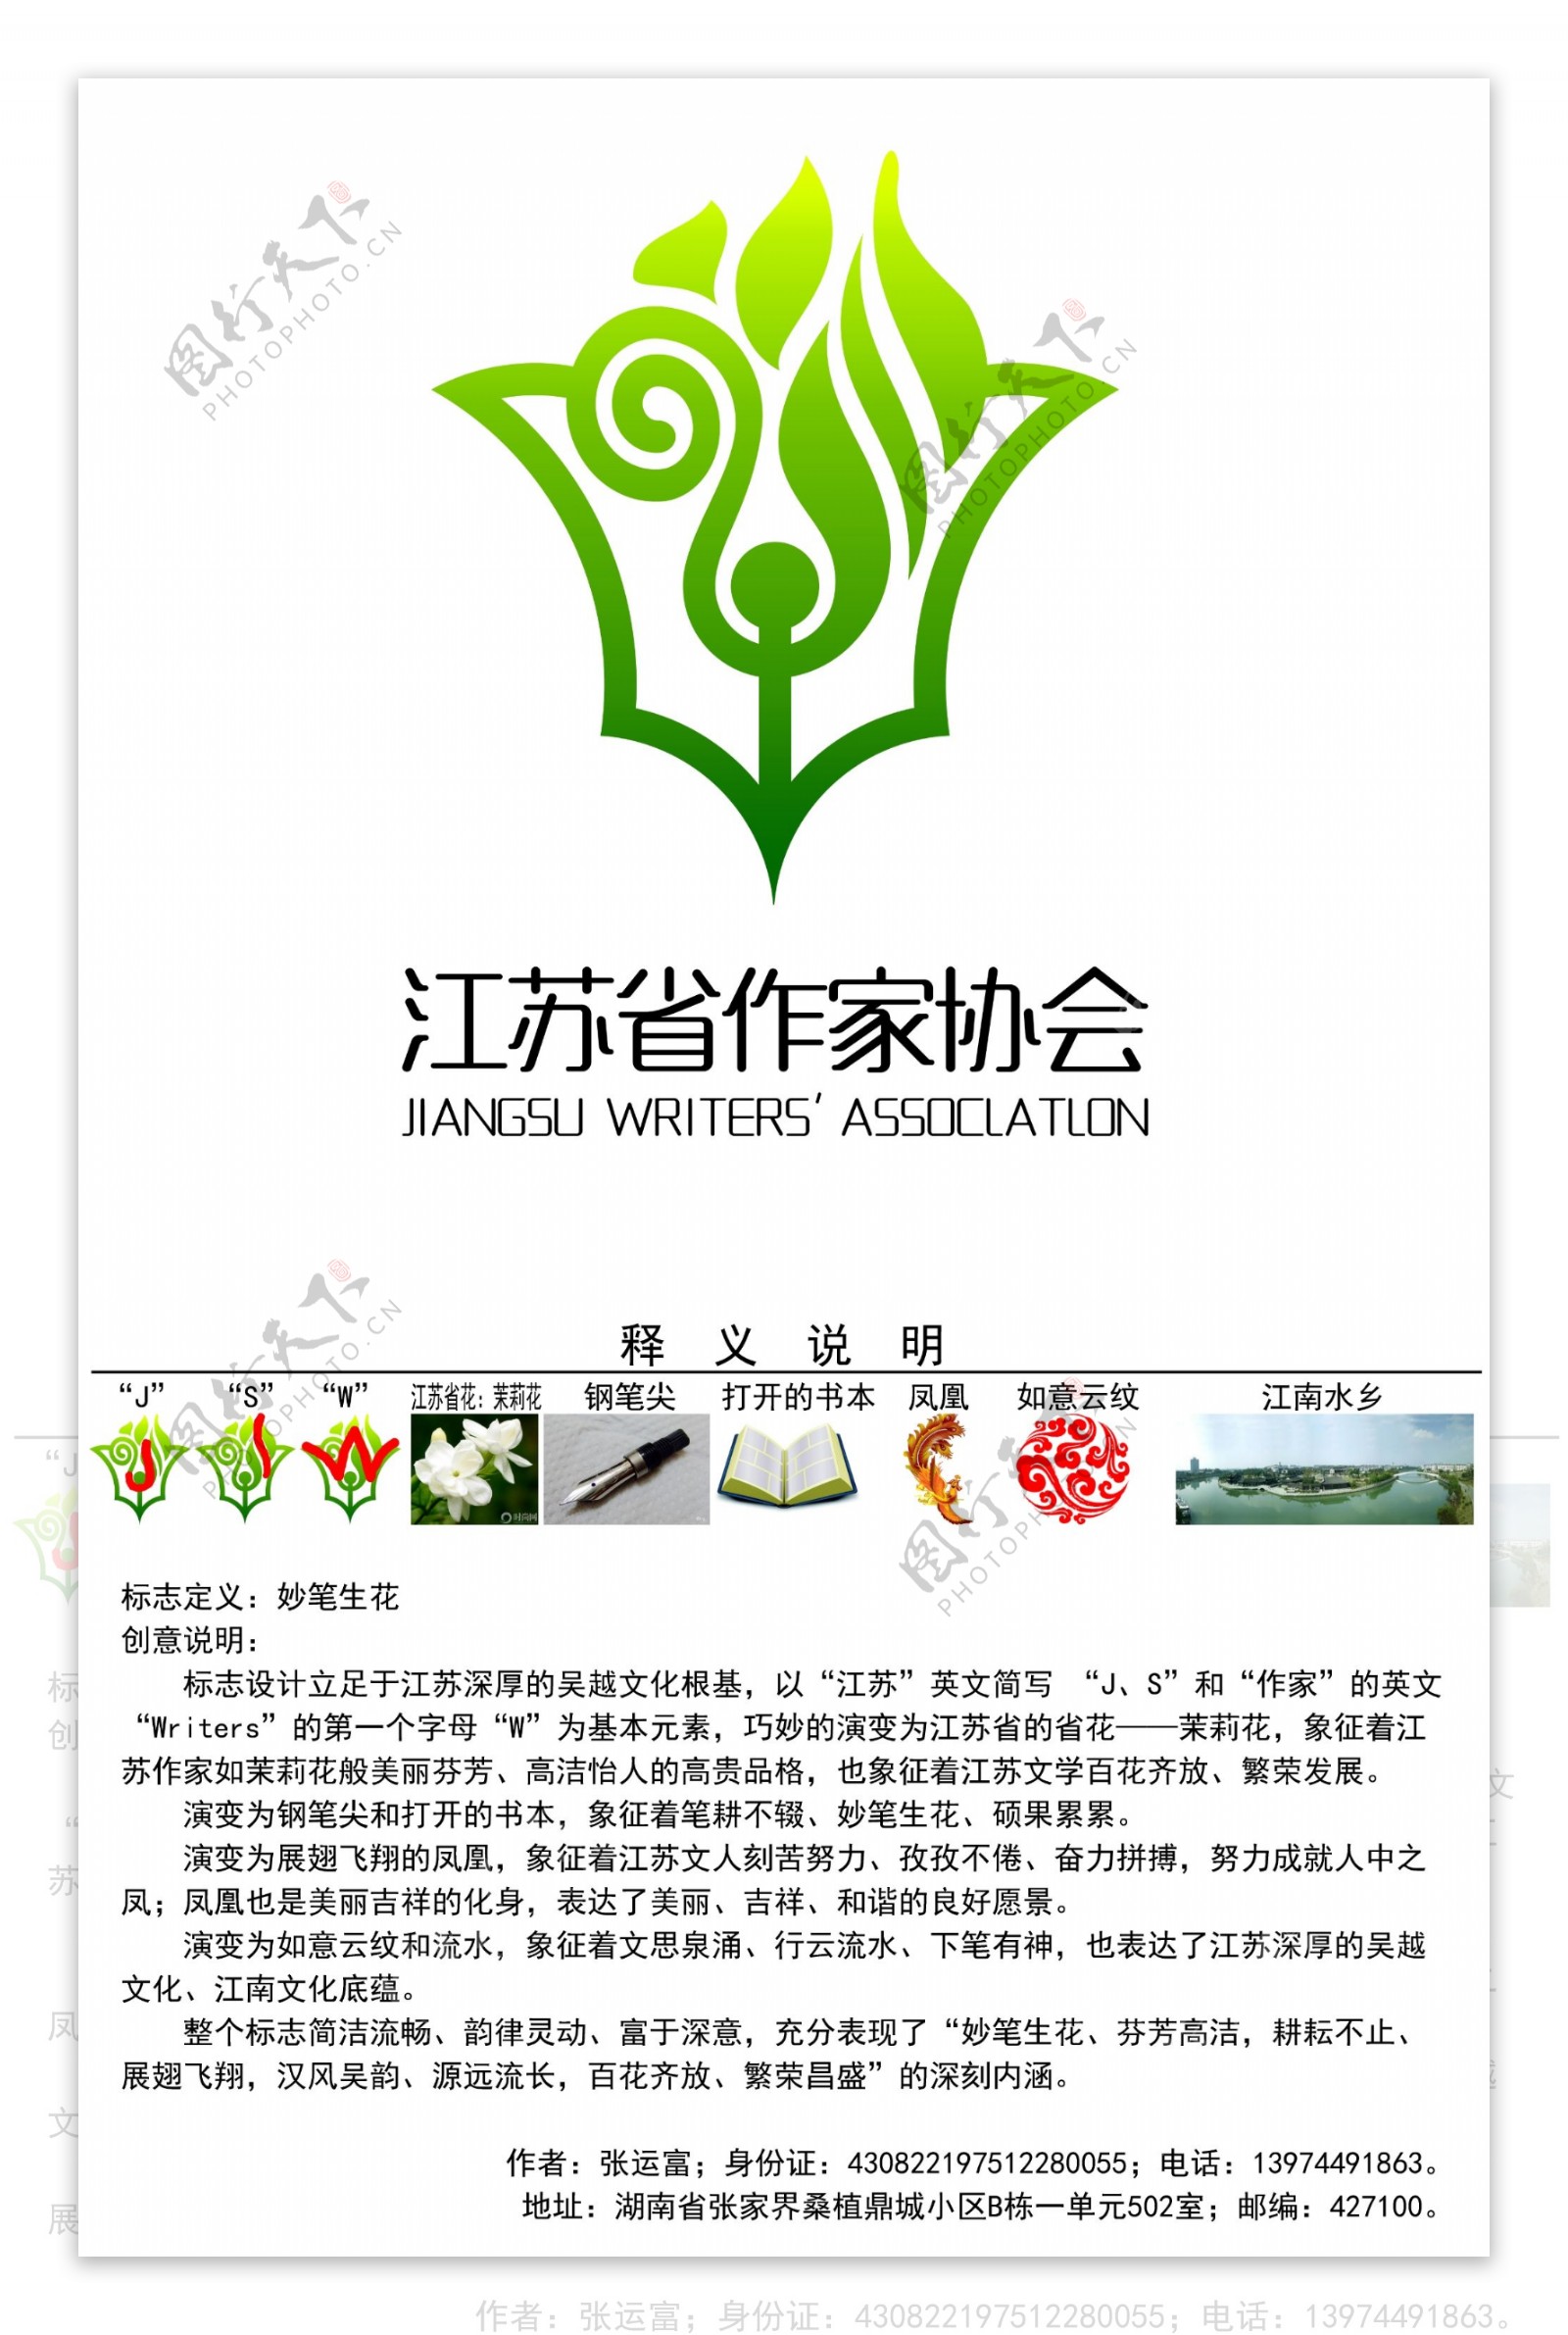 江苏省作家协会标志